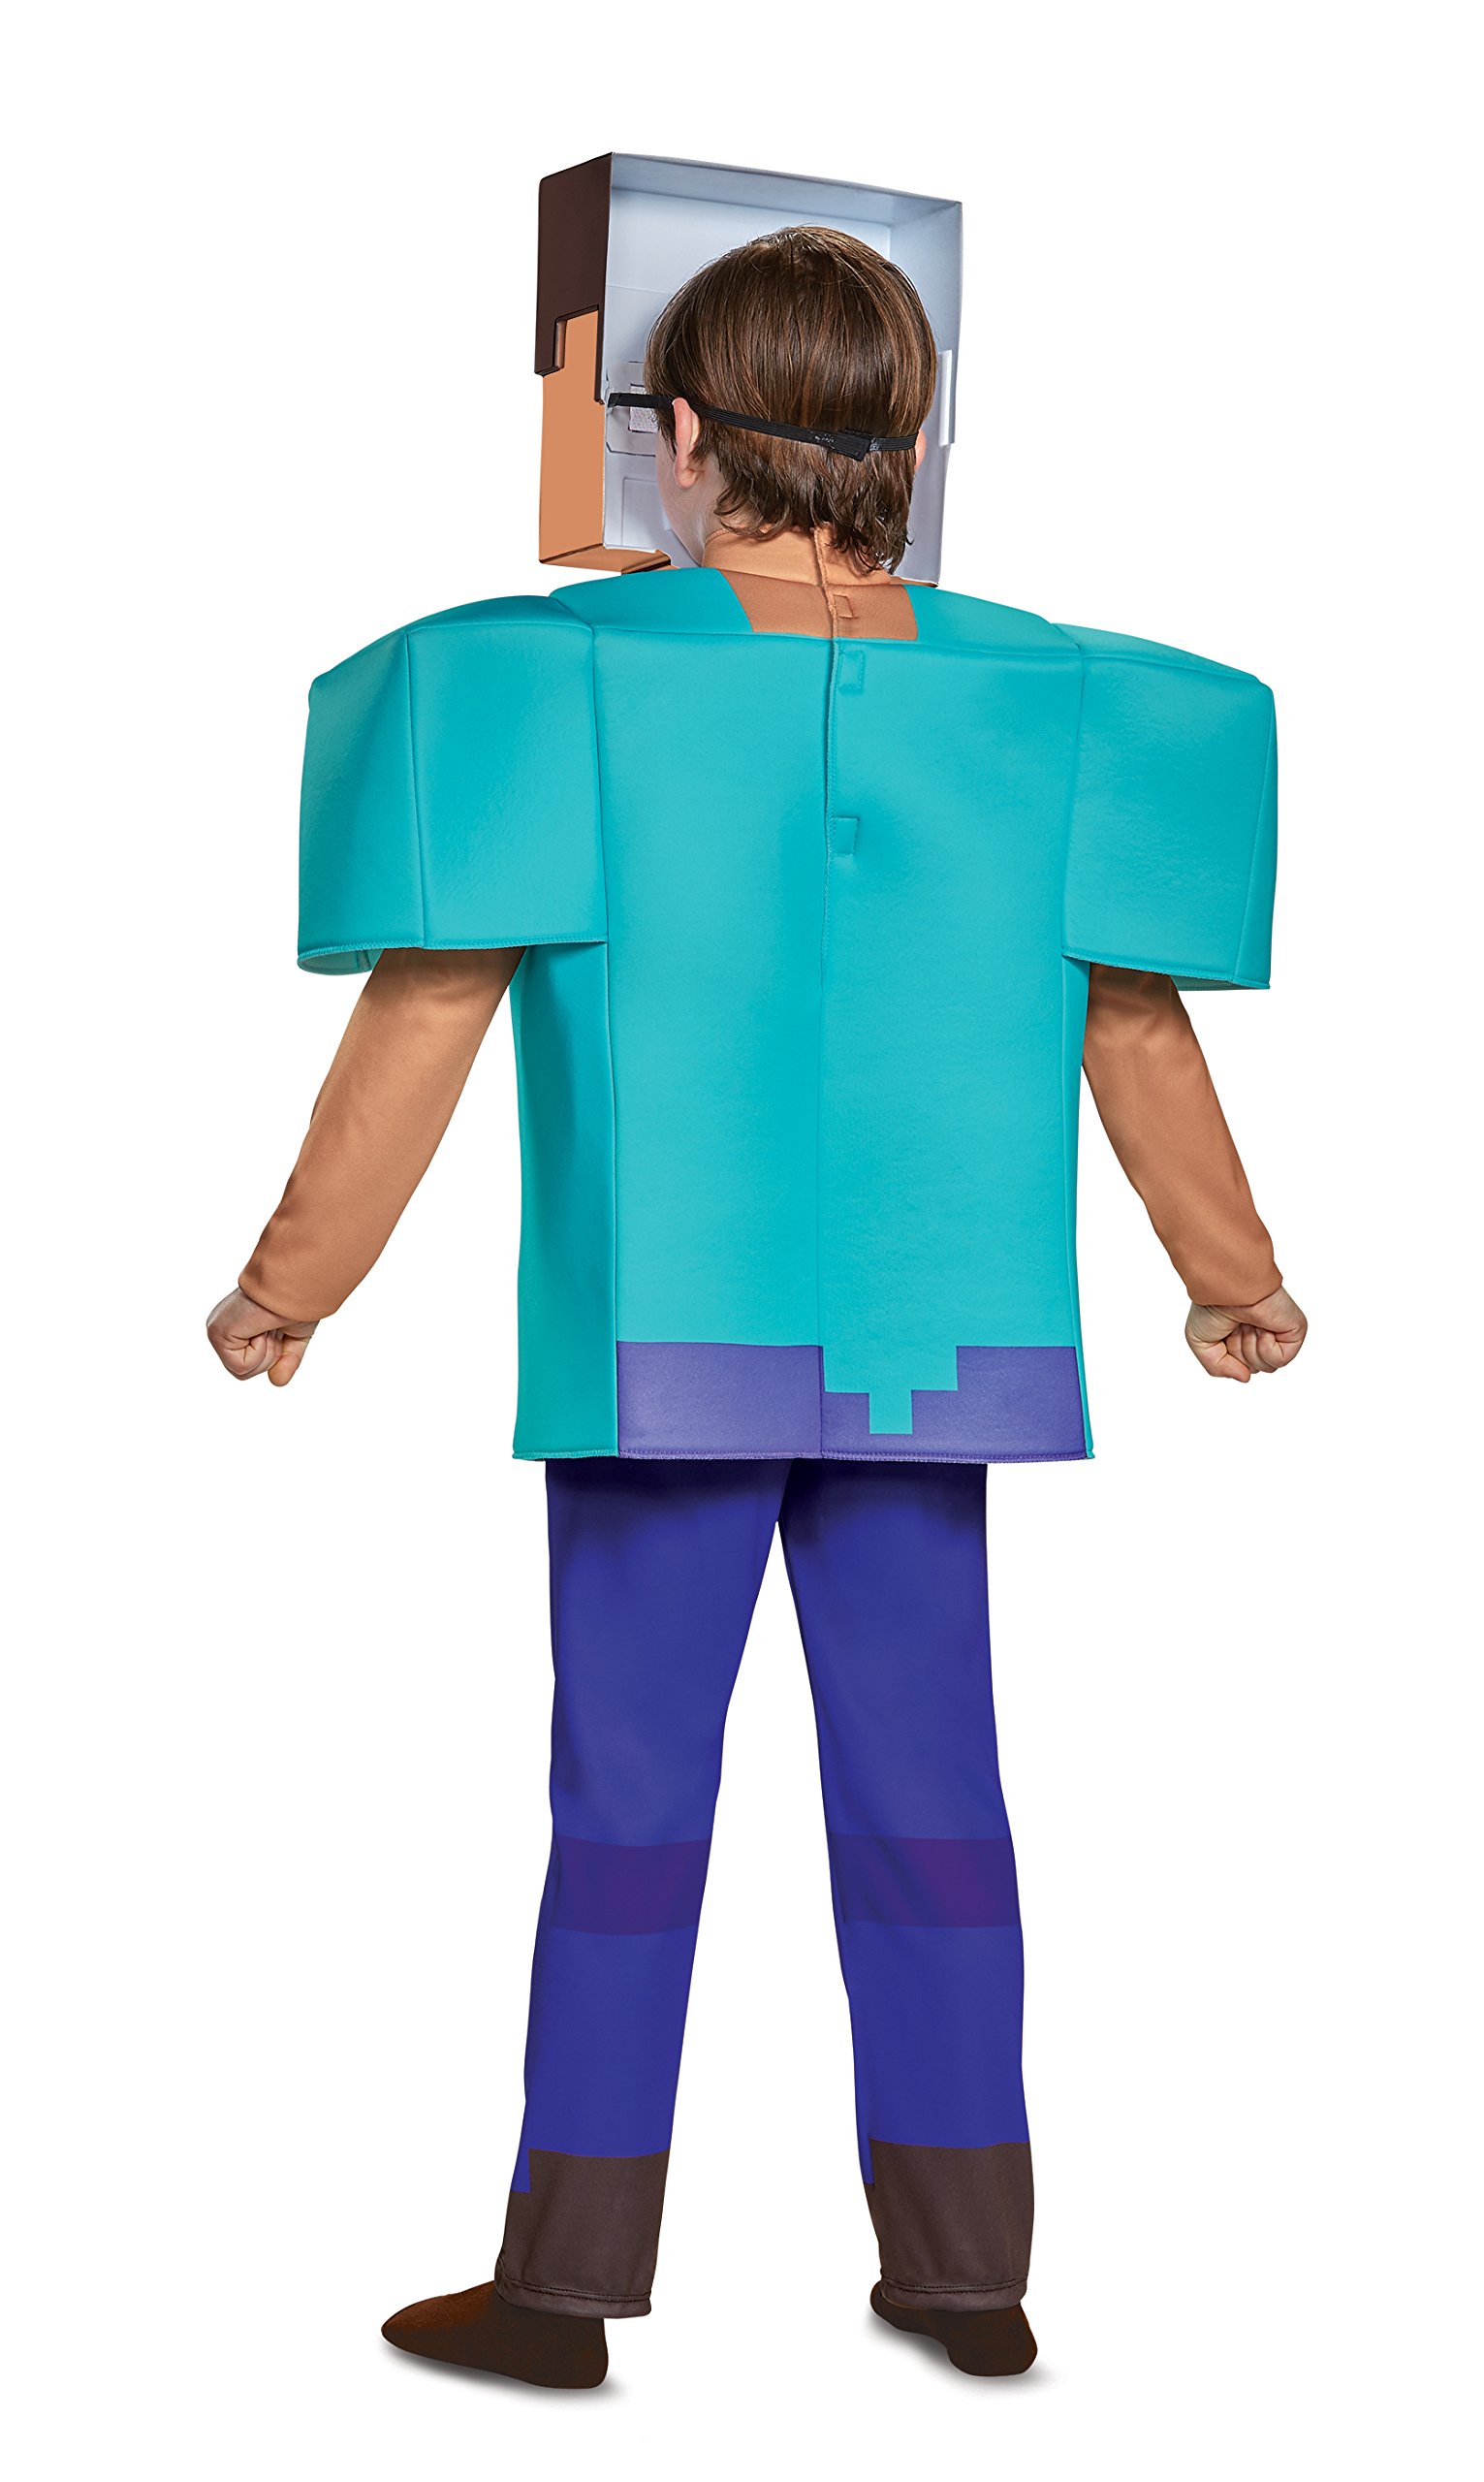 Steve Deluxe Minecraft Costume, Multicolor, Small (4-6)